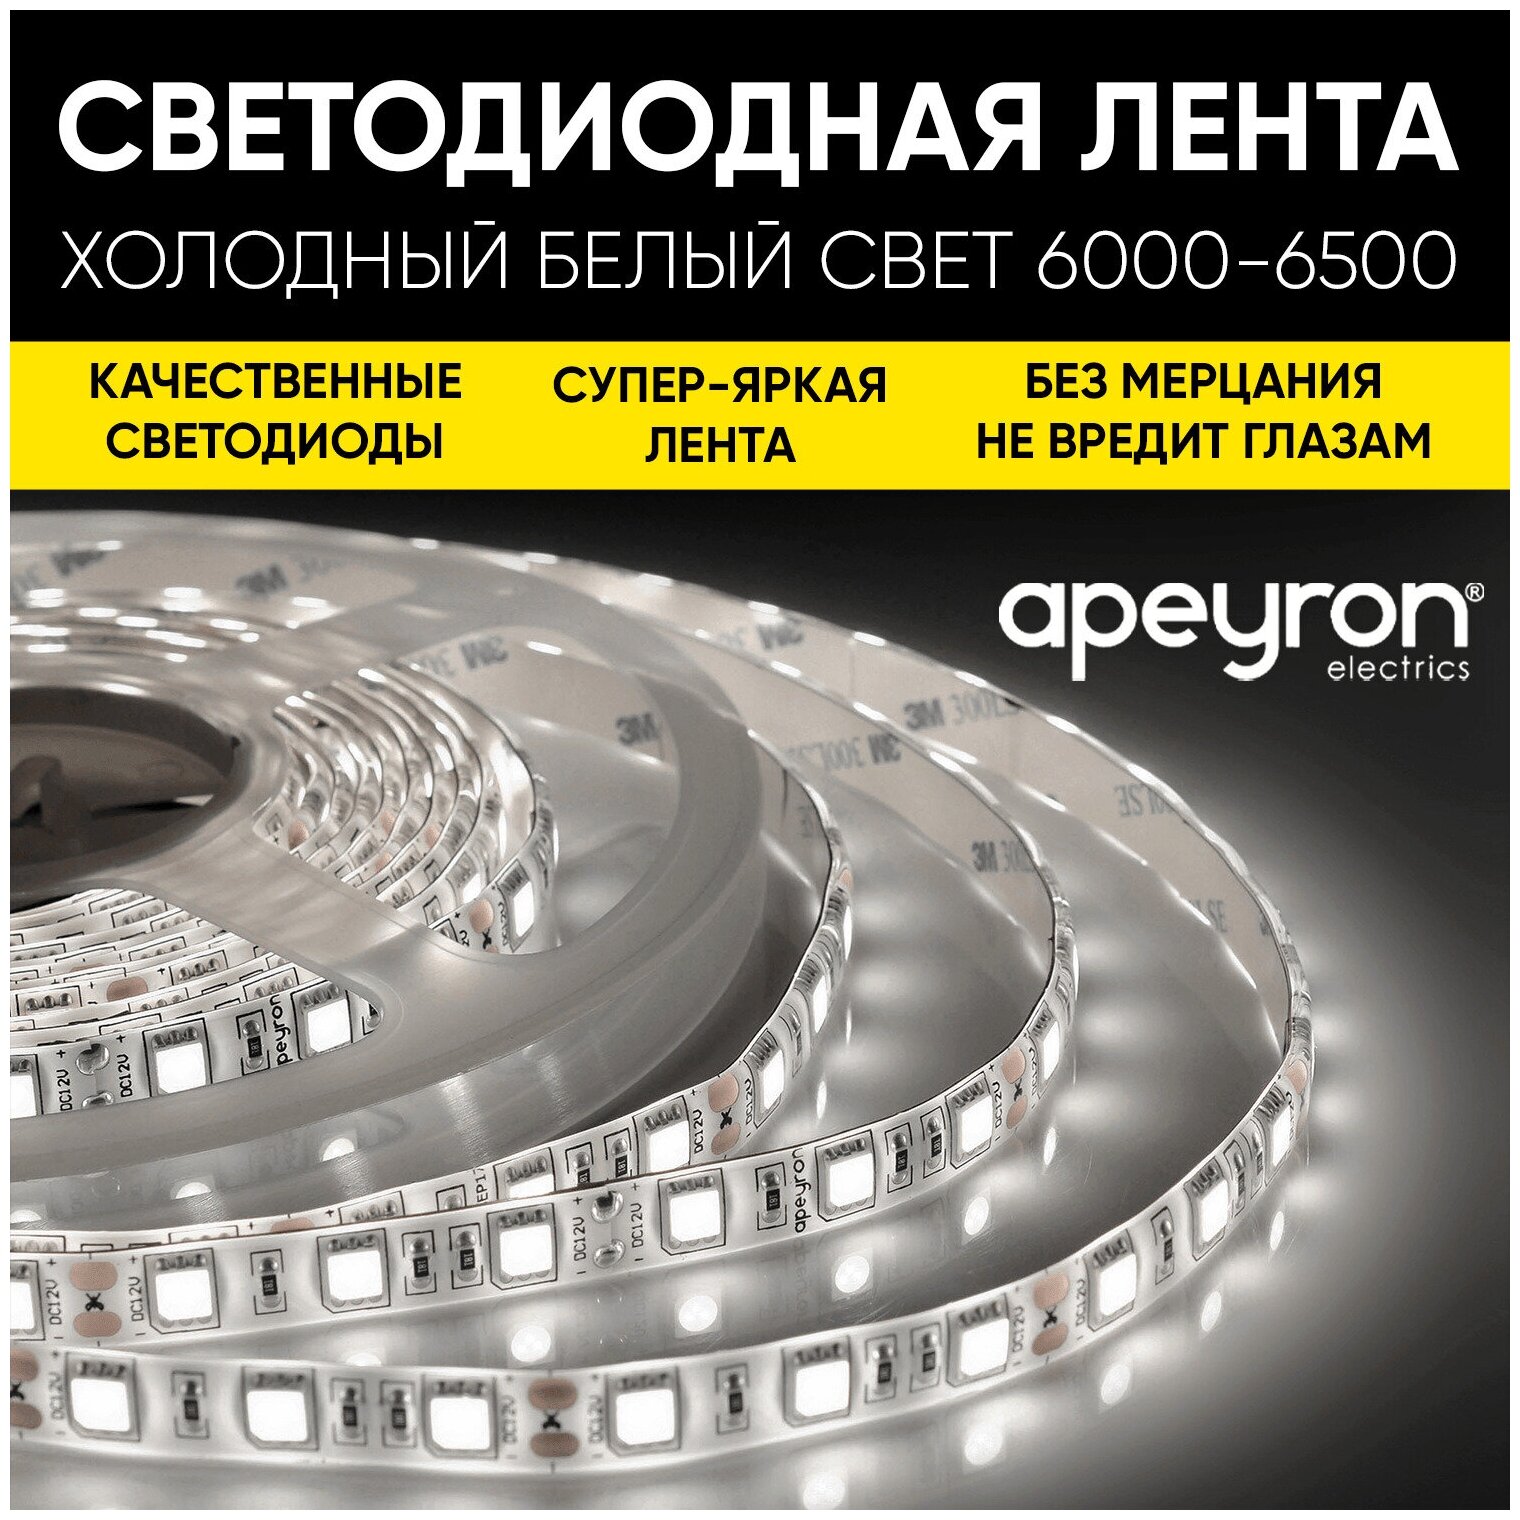 Яркая светодиодная лента Apeyron 00-64 с напряжением 12В, 6500K, 1400 Лм/м, 60д/м, 18Вт/м, smd5630, IP20, длина 5 м - фотография № 1